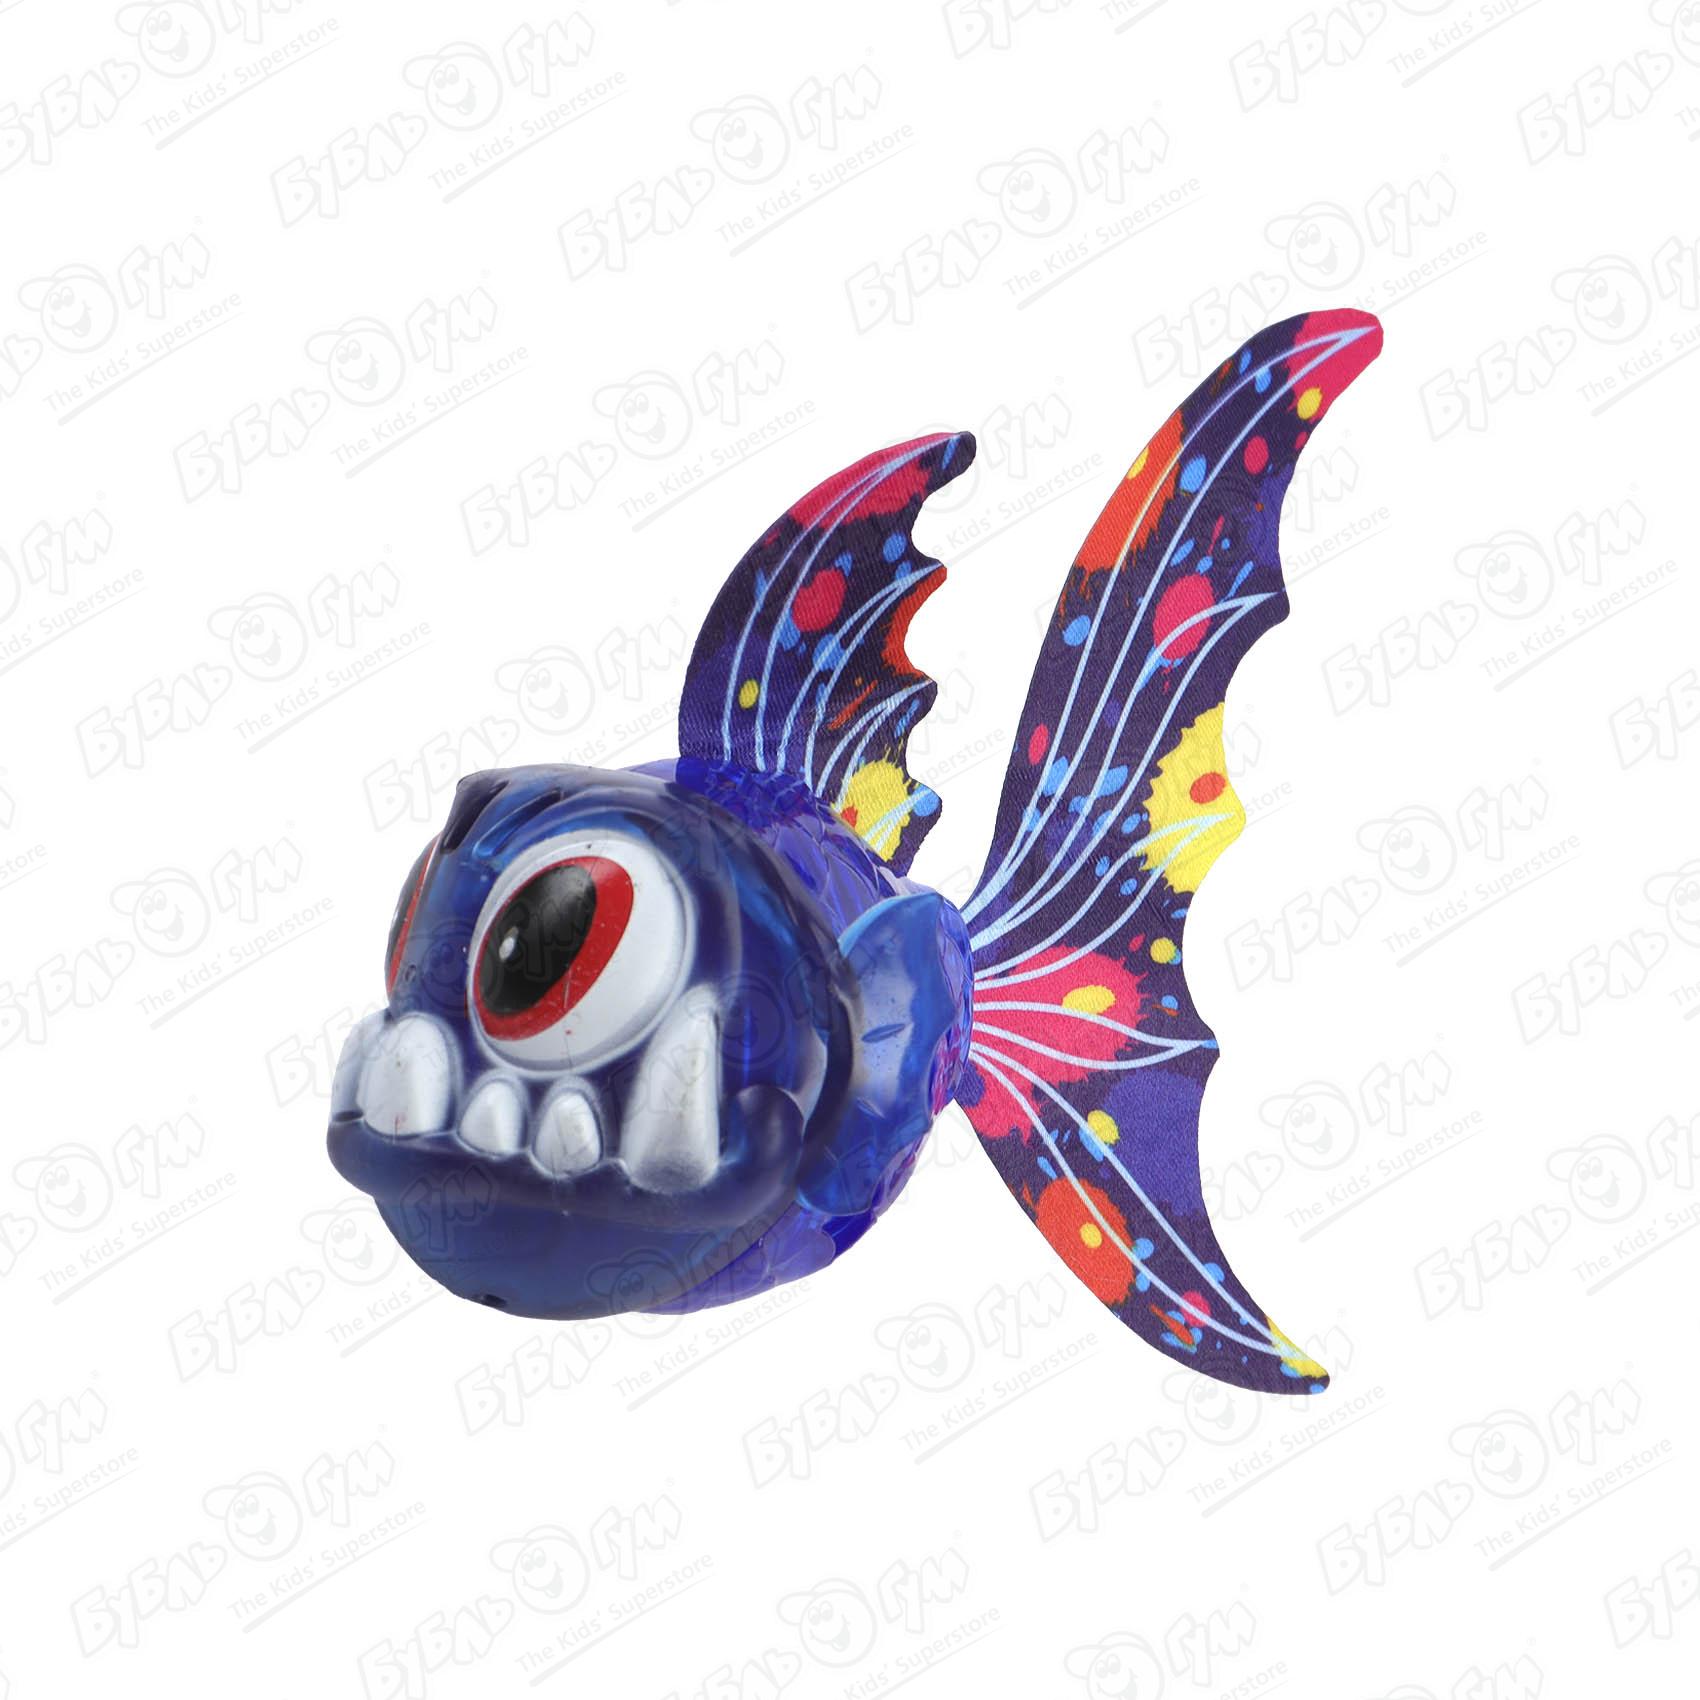 Игрушка для ныряния под воду Рыба со световыми эффектами игрушка надувная для катания рыба клоун 115 98 65 см ig 55